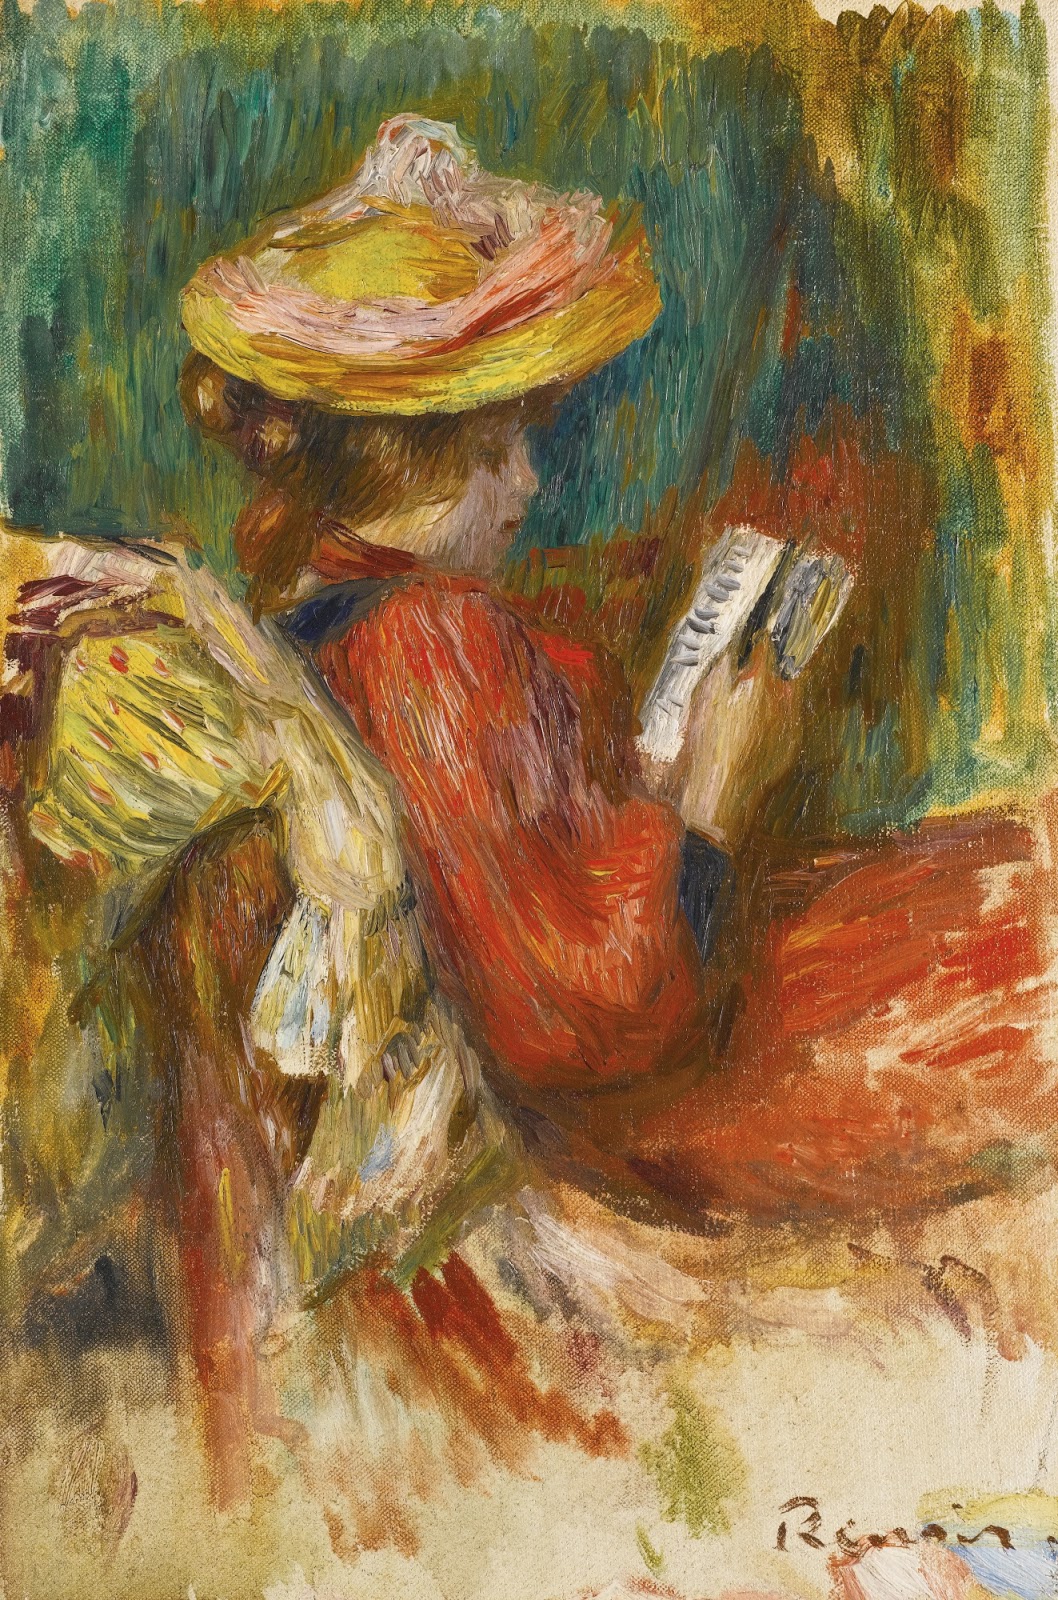 Pierre+Auguste+Renoir-1841-1-19 (722).jpg